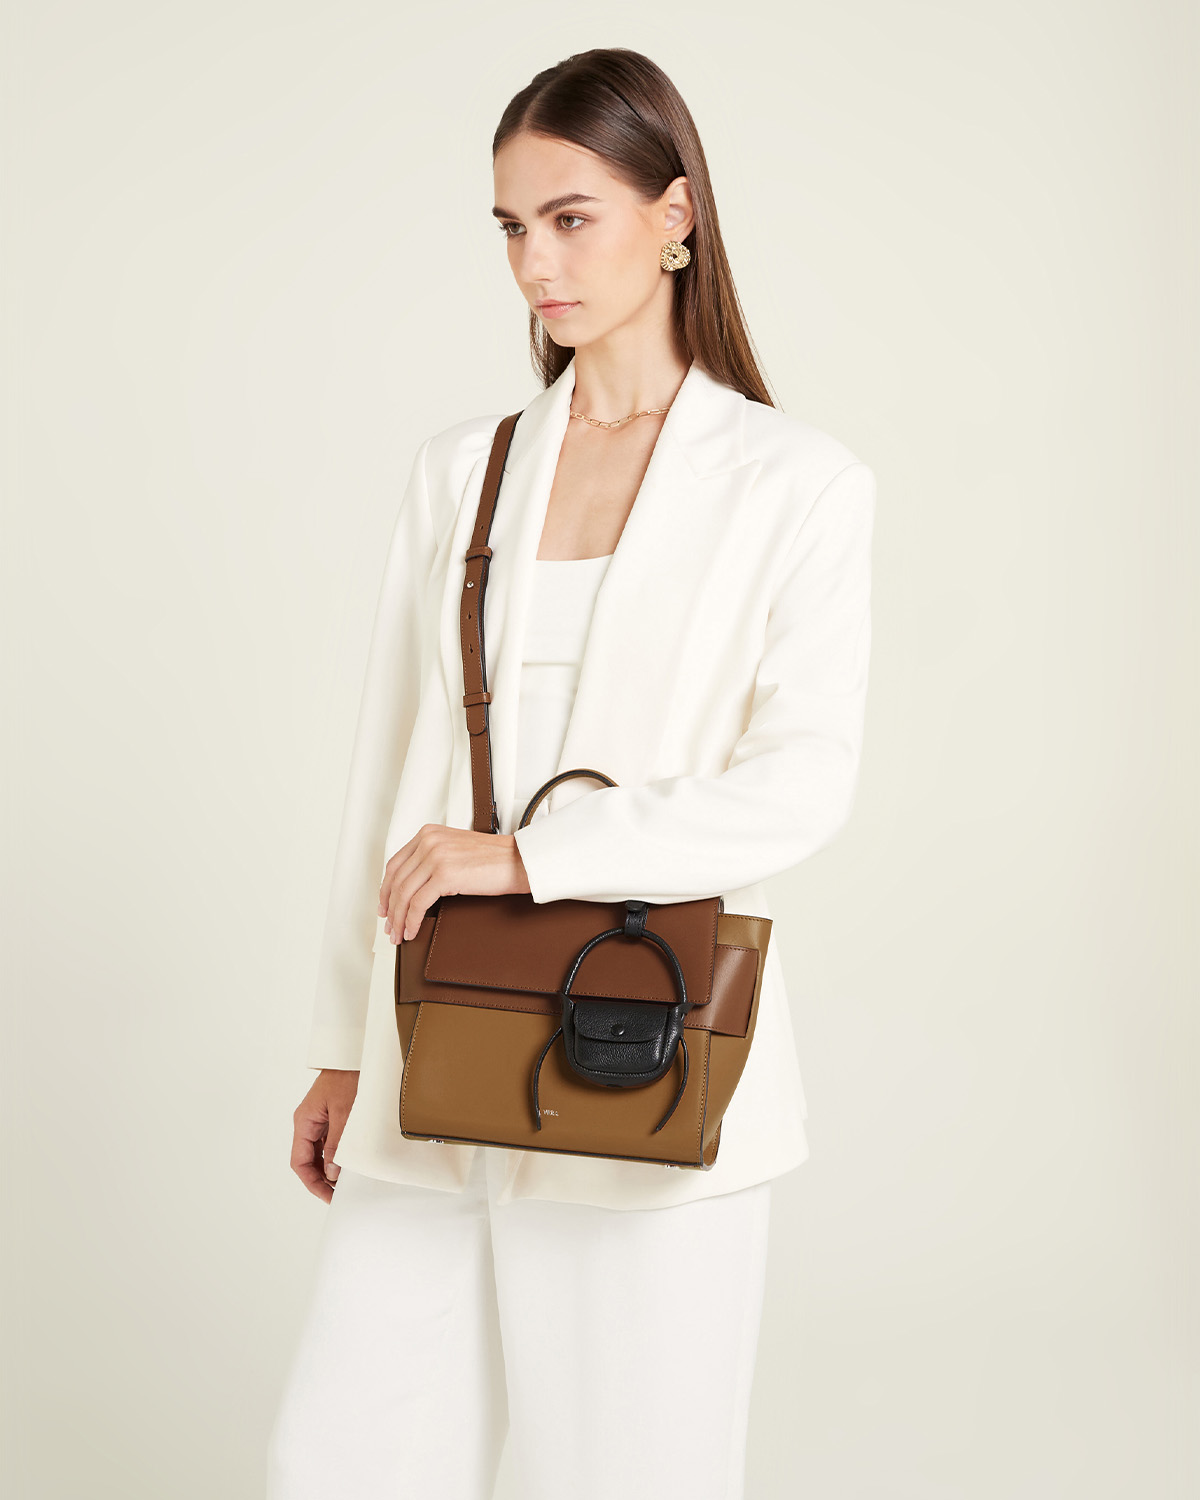 กระเป๋าถือหนังแท้ VERA Margo Leather Handbag, Size 20 สี Caramel